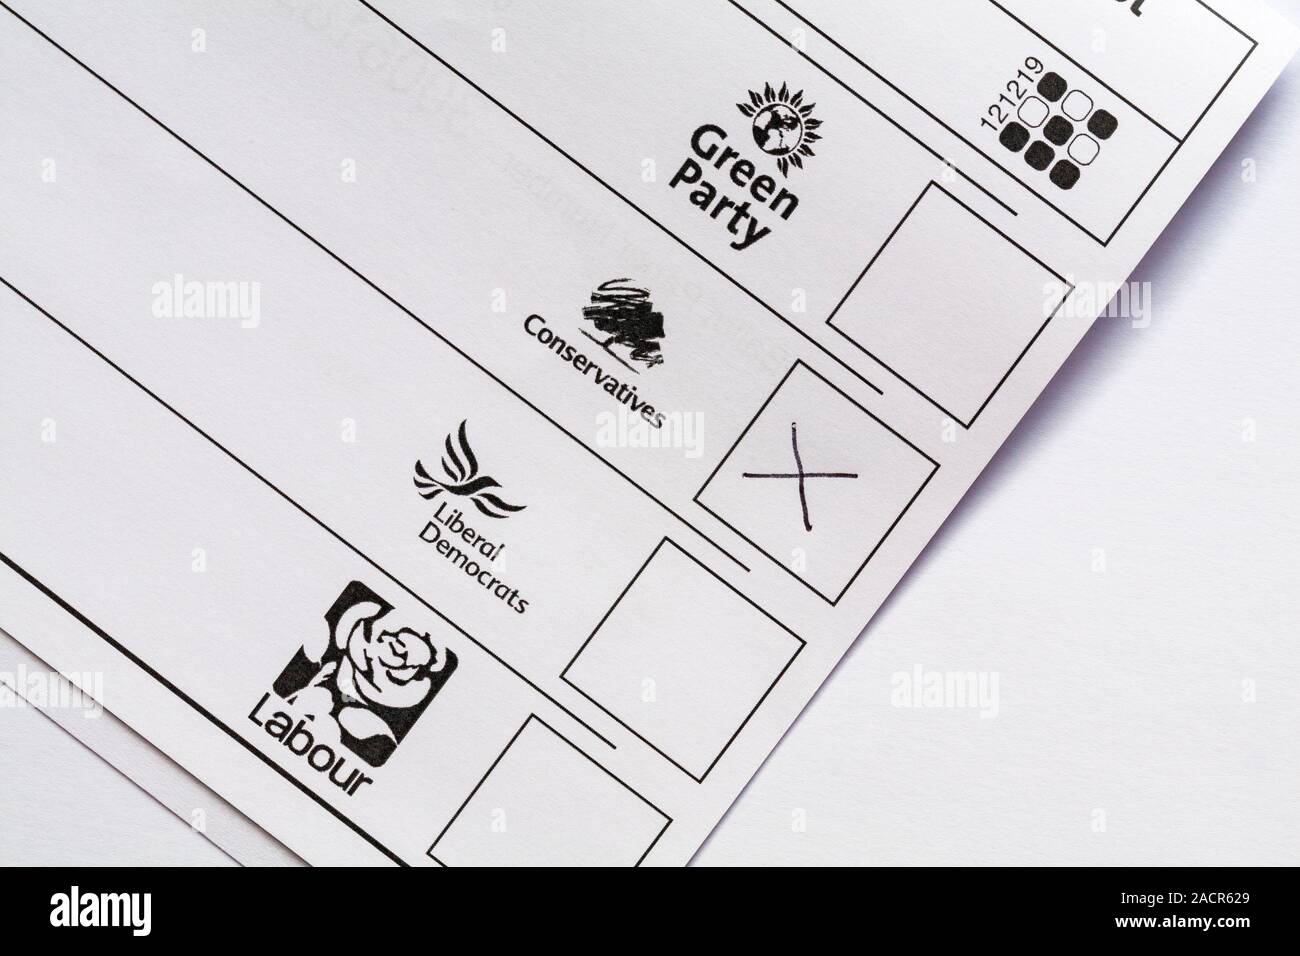 Partis pour l'ouest de Bournemouth candidat circonscription le bulletin de vote pour l'élection générale 2019 parlementaire au Royaume-Uni X contre conservateurs votant vote Banque D'Images